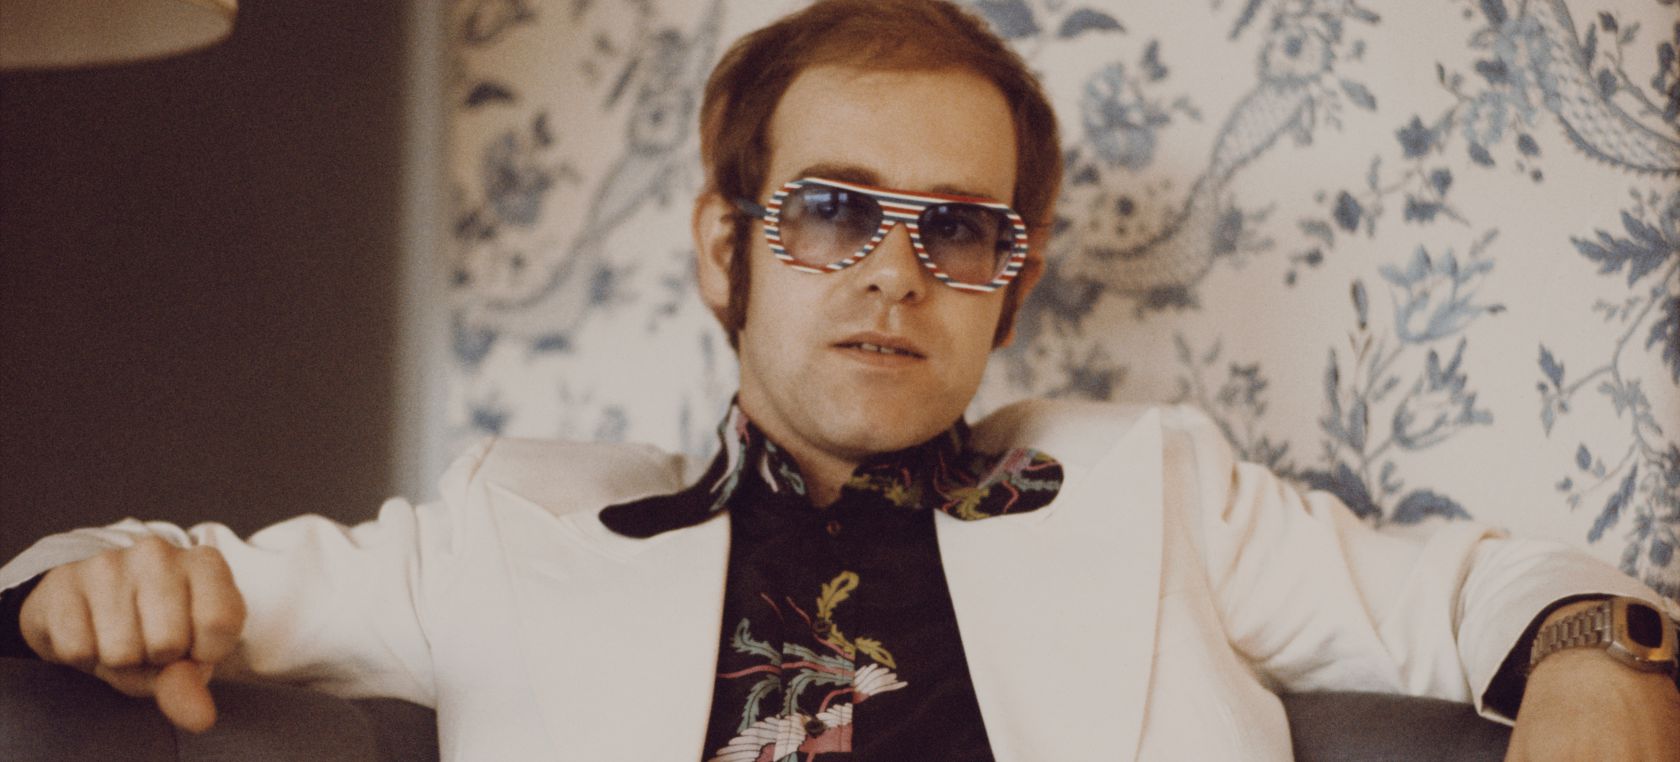 Elton John y la historia de su nombre: “Odiaba Reginald y cuando me convertí en Elton John todo fue genial” | LOS40 Classic | LOS40